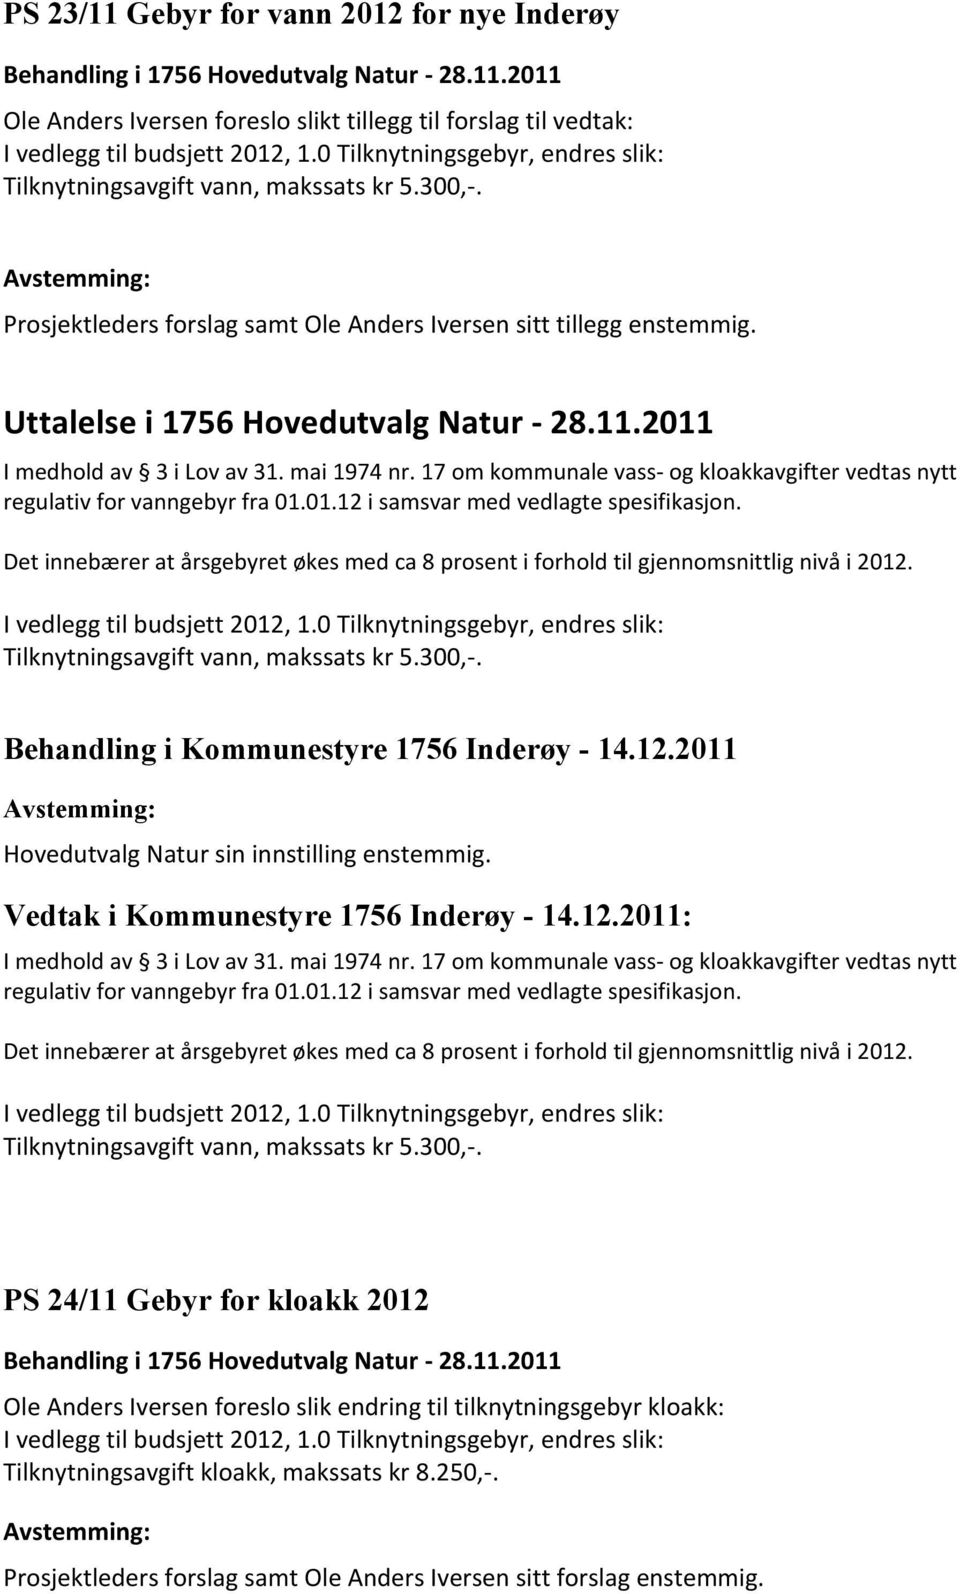 2011 I medhold av 3 i Lov av 31. mai 1974 nr. 17 om kommunale vass- og kloakkavgifter vedtas nytt regulativ for vanngebyr fra 01.01.12 i samsvar med vedlagte spesifikasjon.